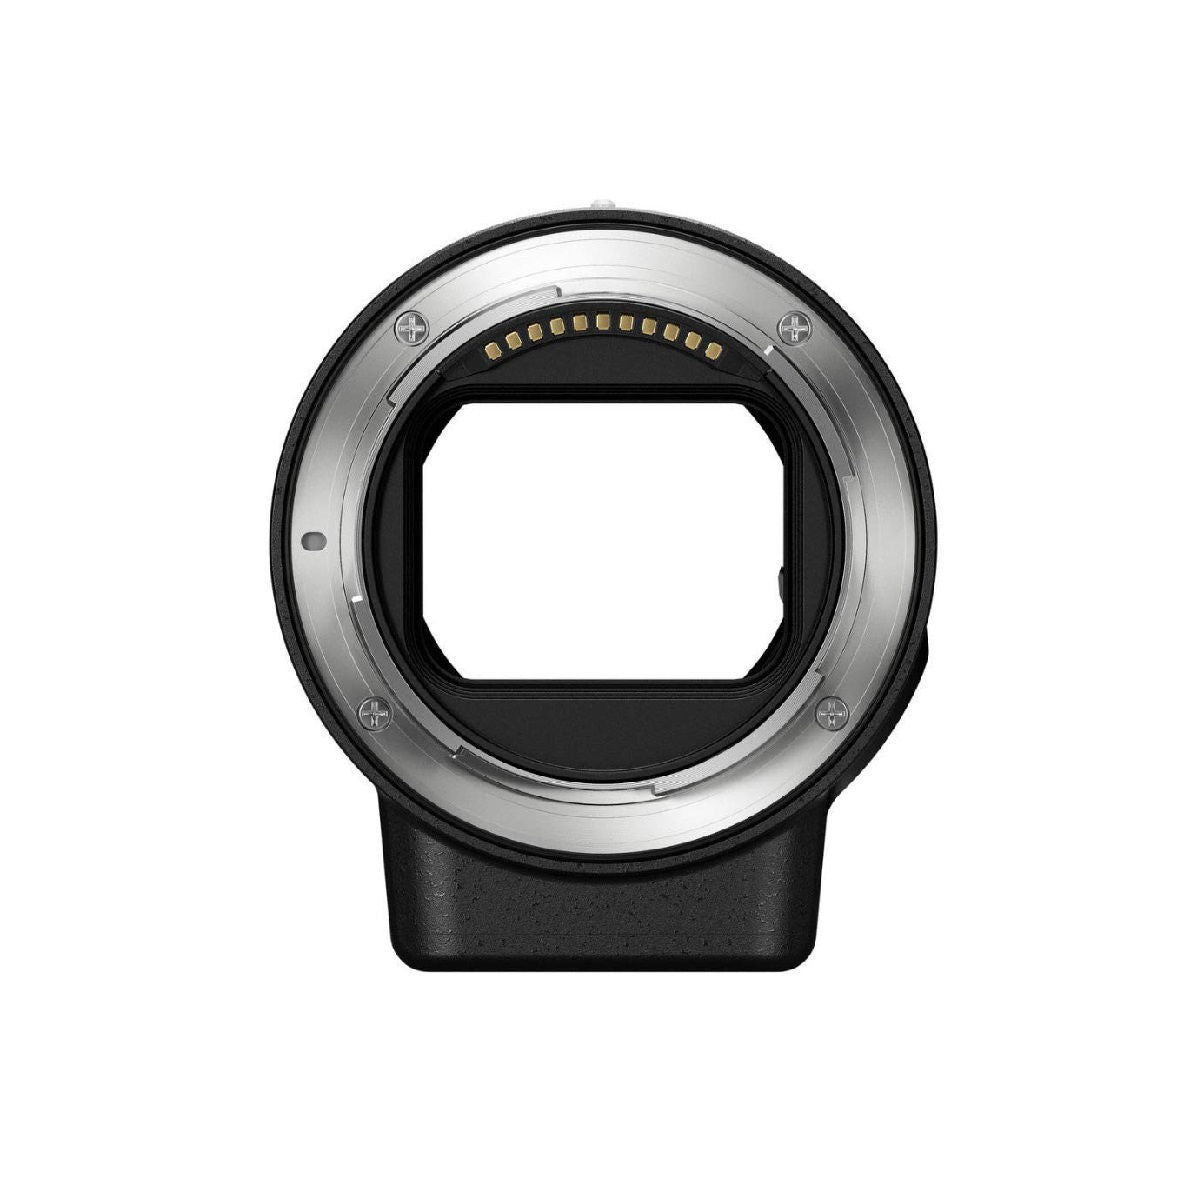 Nikon Z 7 मिररलेस डिजिटल कैमरा Ftz माउंट एडाप्टर किट ब्लैक के साथ